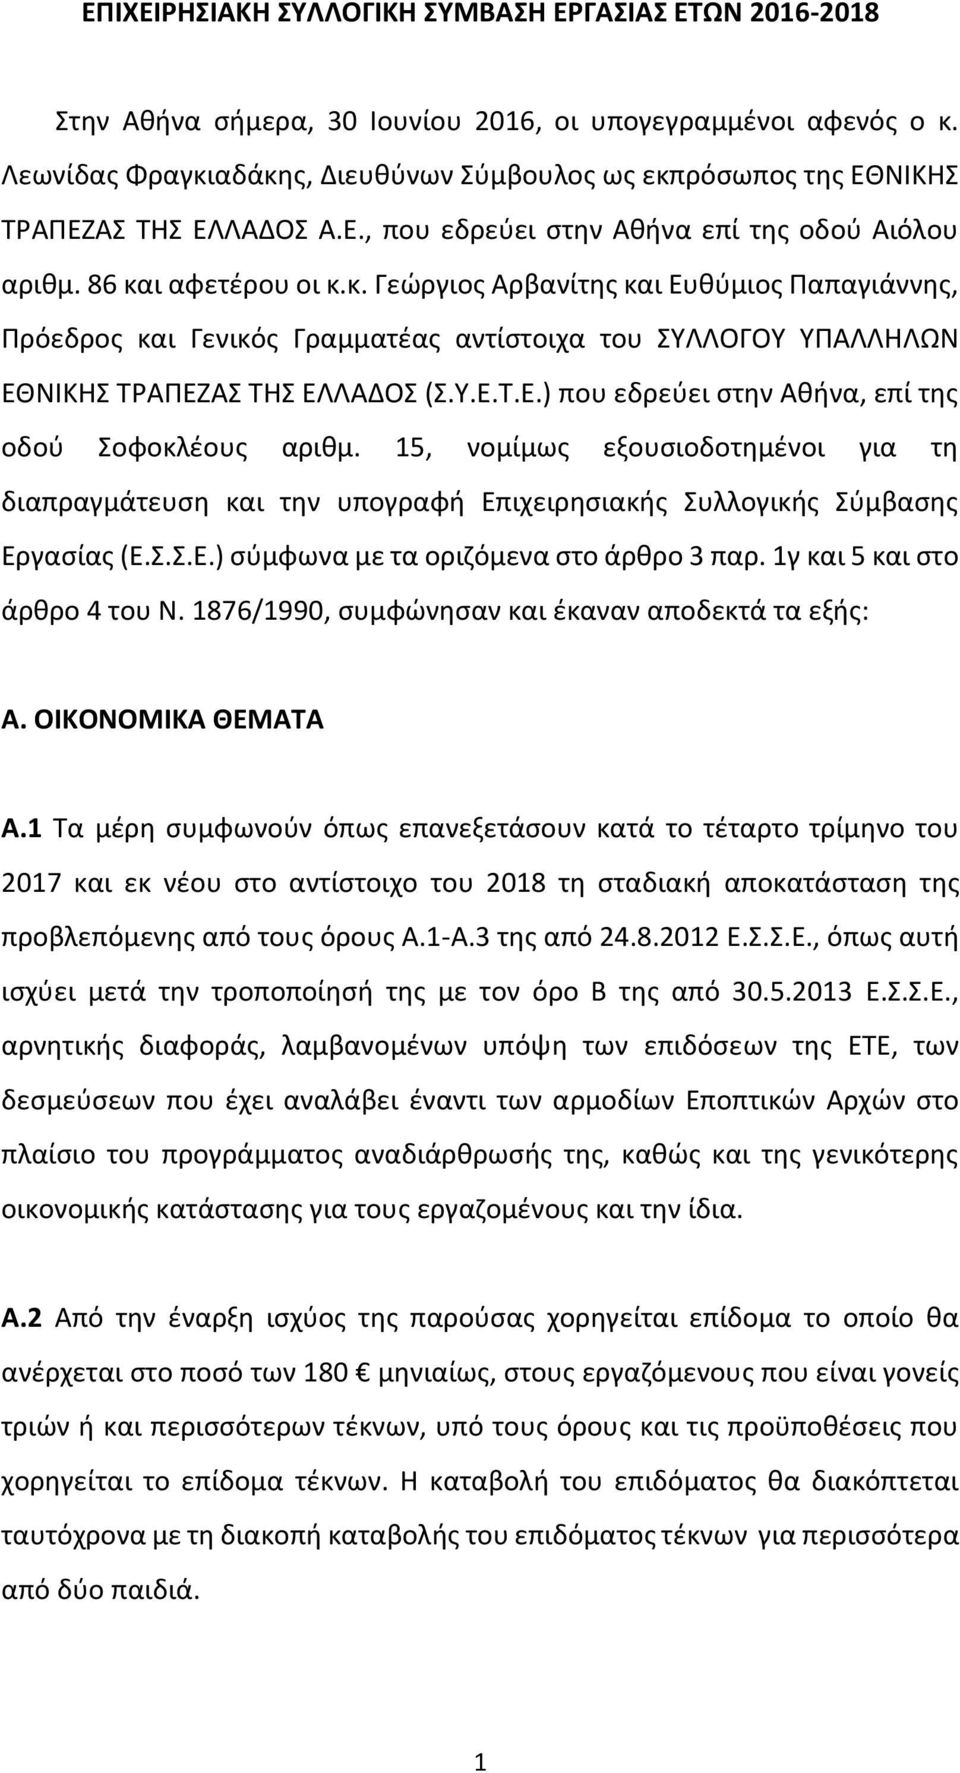 Υ.Ε.Τ.Ε.) που εδρεύει στην Αθήνα, επί της οδού Σοφοκλέους αριθμ. 15, νομίμως εξουσιοδοτημένοι για τη διαπραγμάτευση και την υπογραφή Επιχειρησιακής Συλλογικής Σύμβασης Εργασίας (Ε.Σ.Σ.Ε.) σύμφωνα με τα οριζόμενα στο άρθρο 3 παρ.